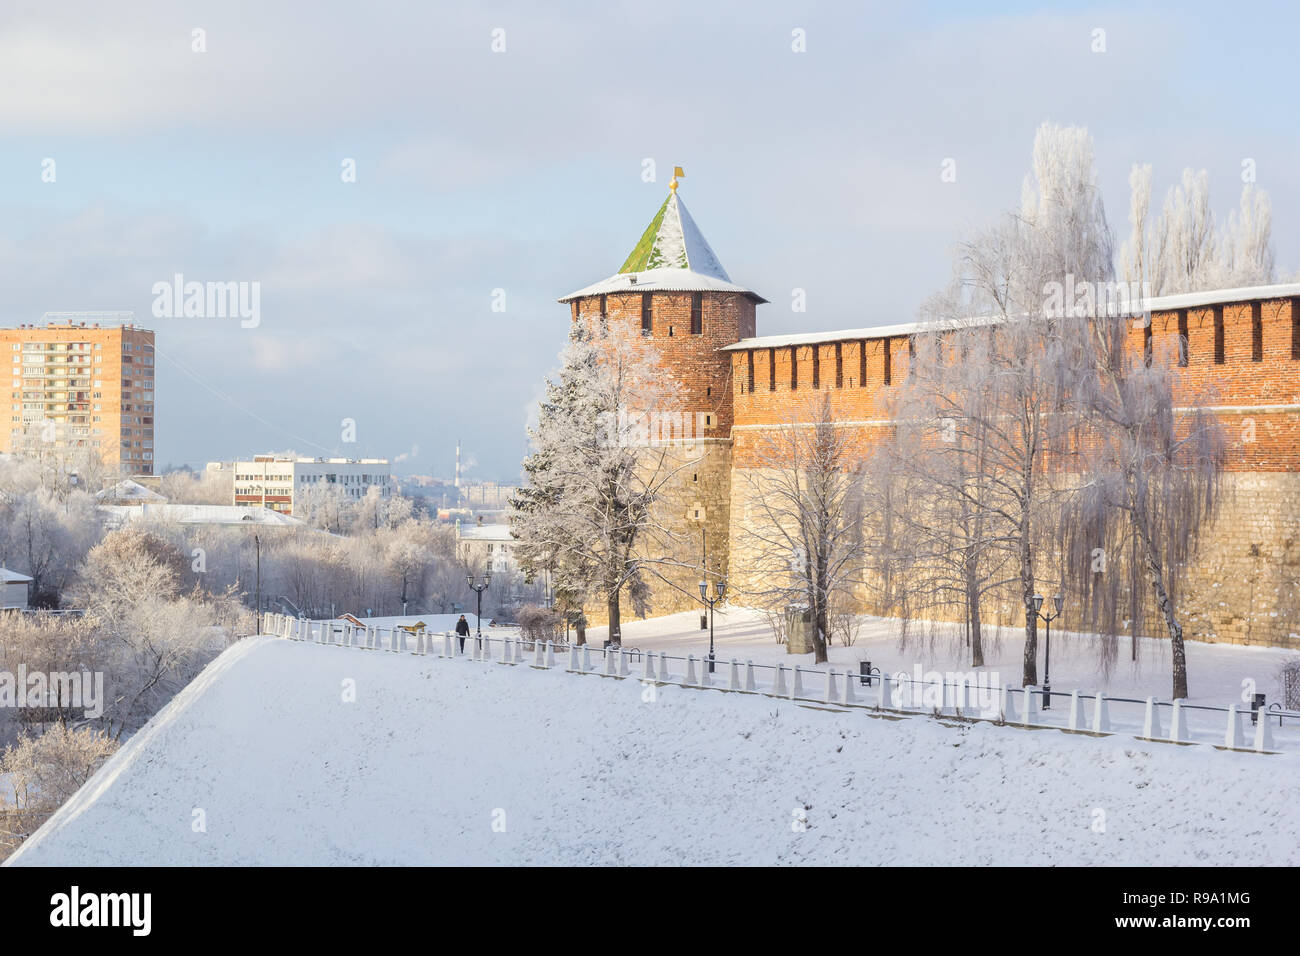 Koromyslova Tower of the Nizhny Novgorod Kremlin in winter, Russia Stock Photo